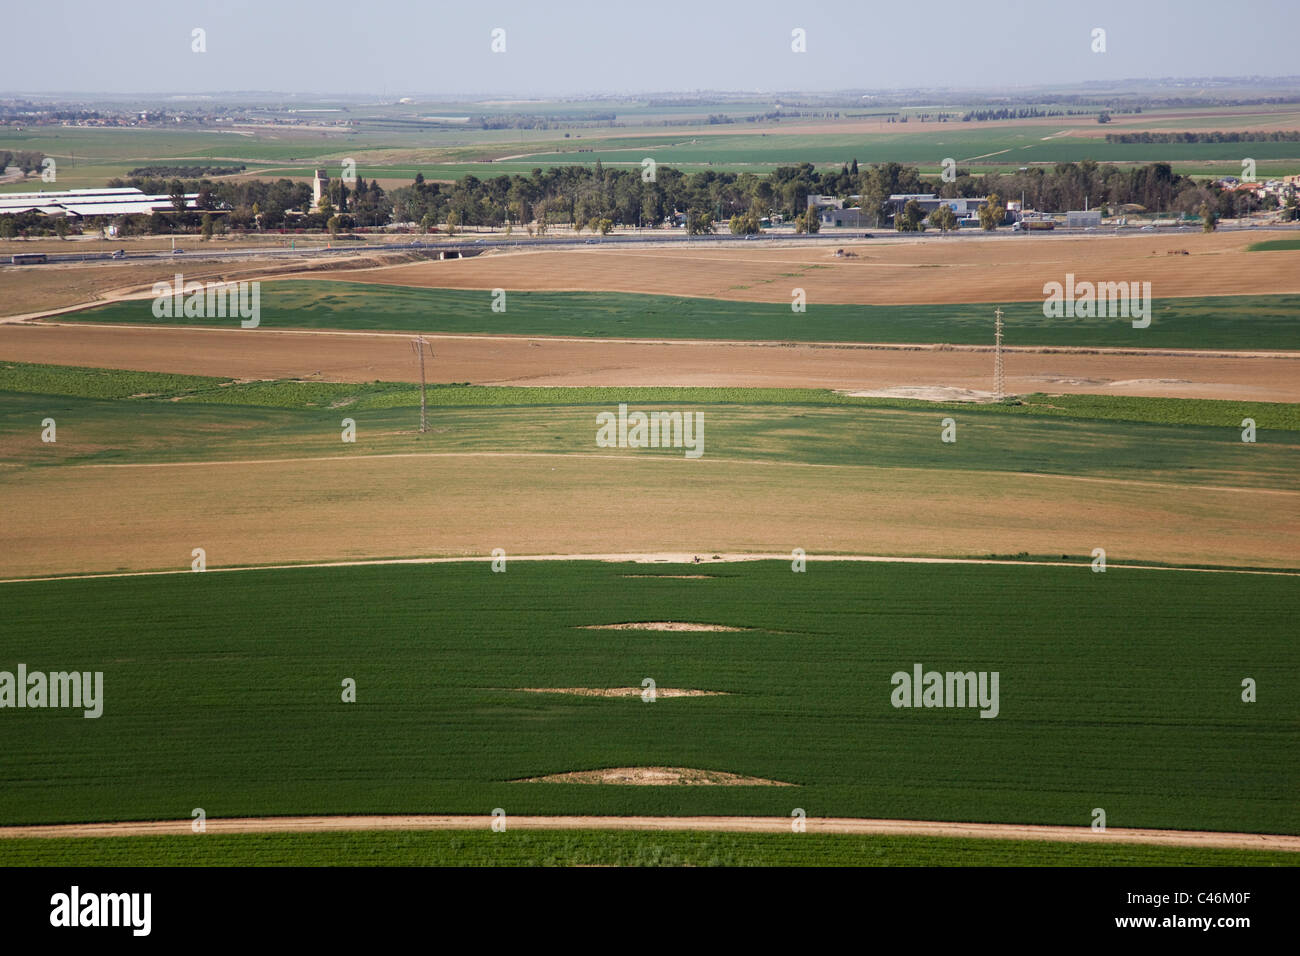 Fotografia aerea dell'agricoltura i campi della pianura Foto Stock